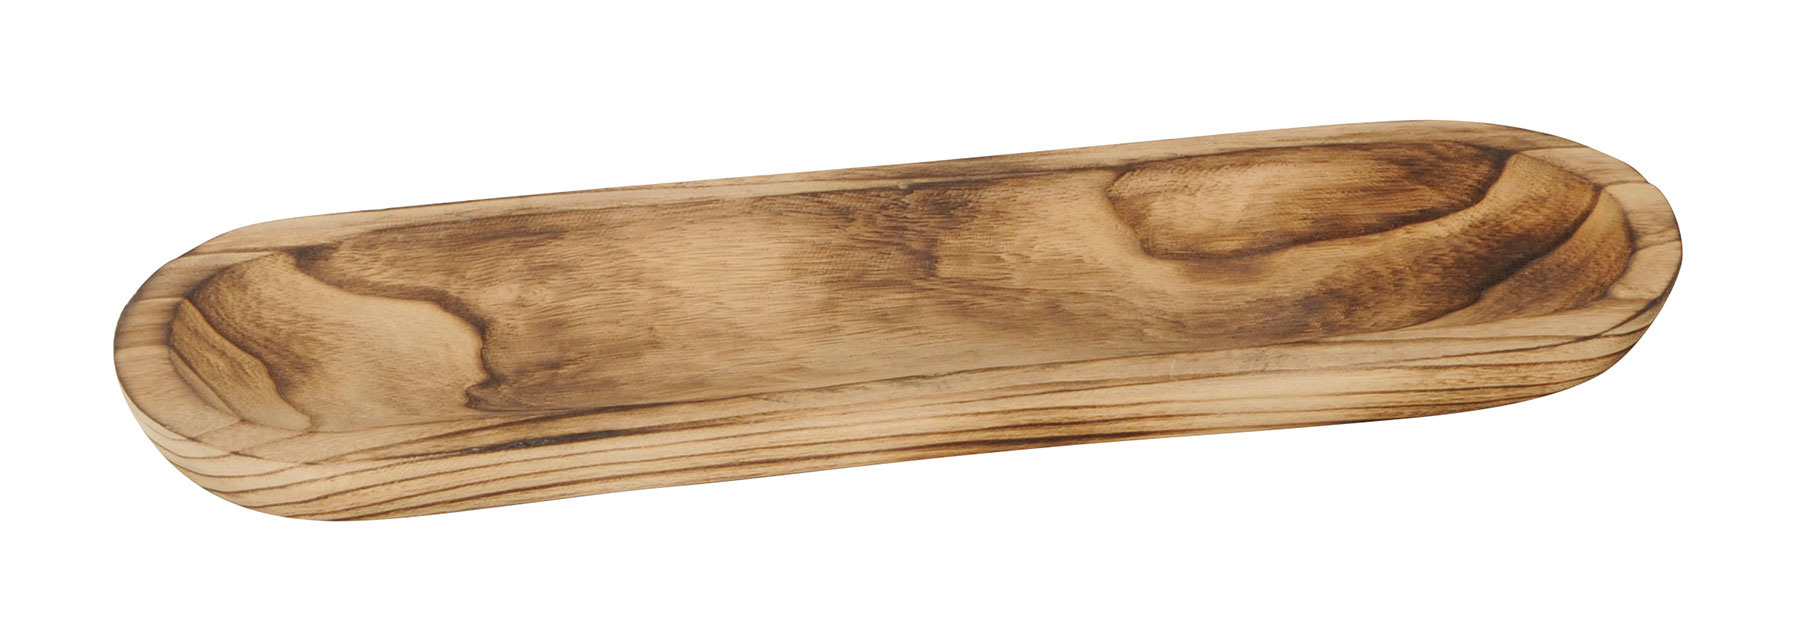 Holz-Tablett L52cm Holz Braun Geflammt Ablage Schale Holzschale Natur Tischdeko